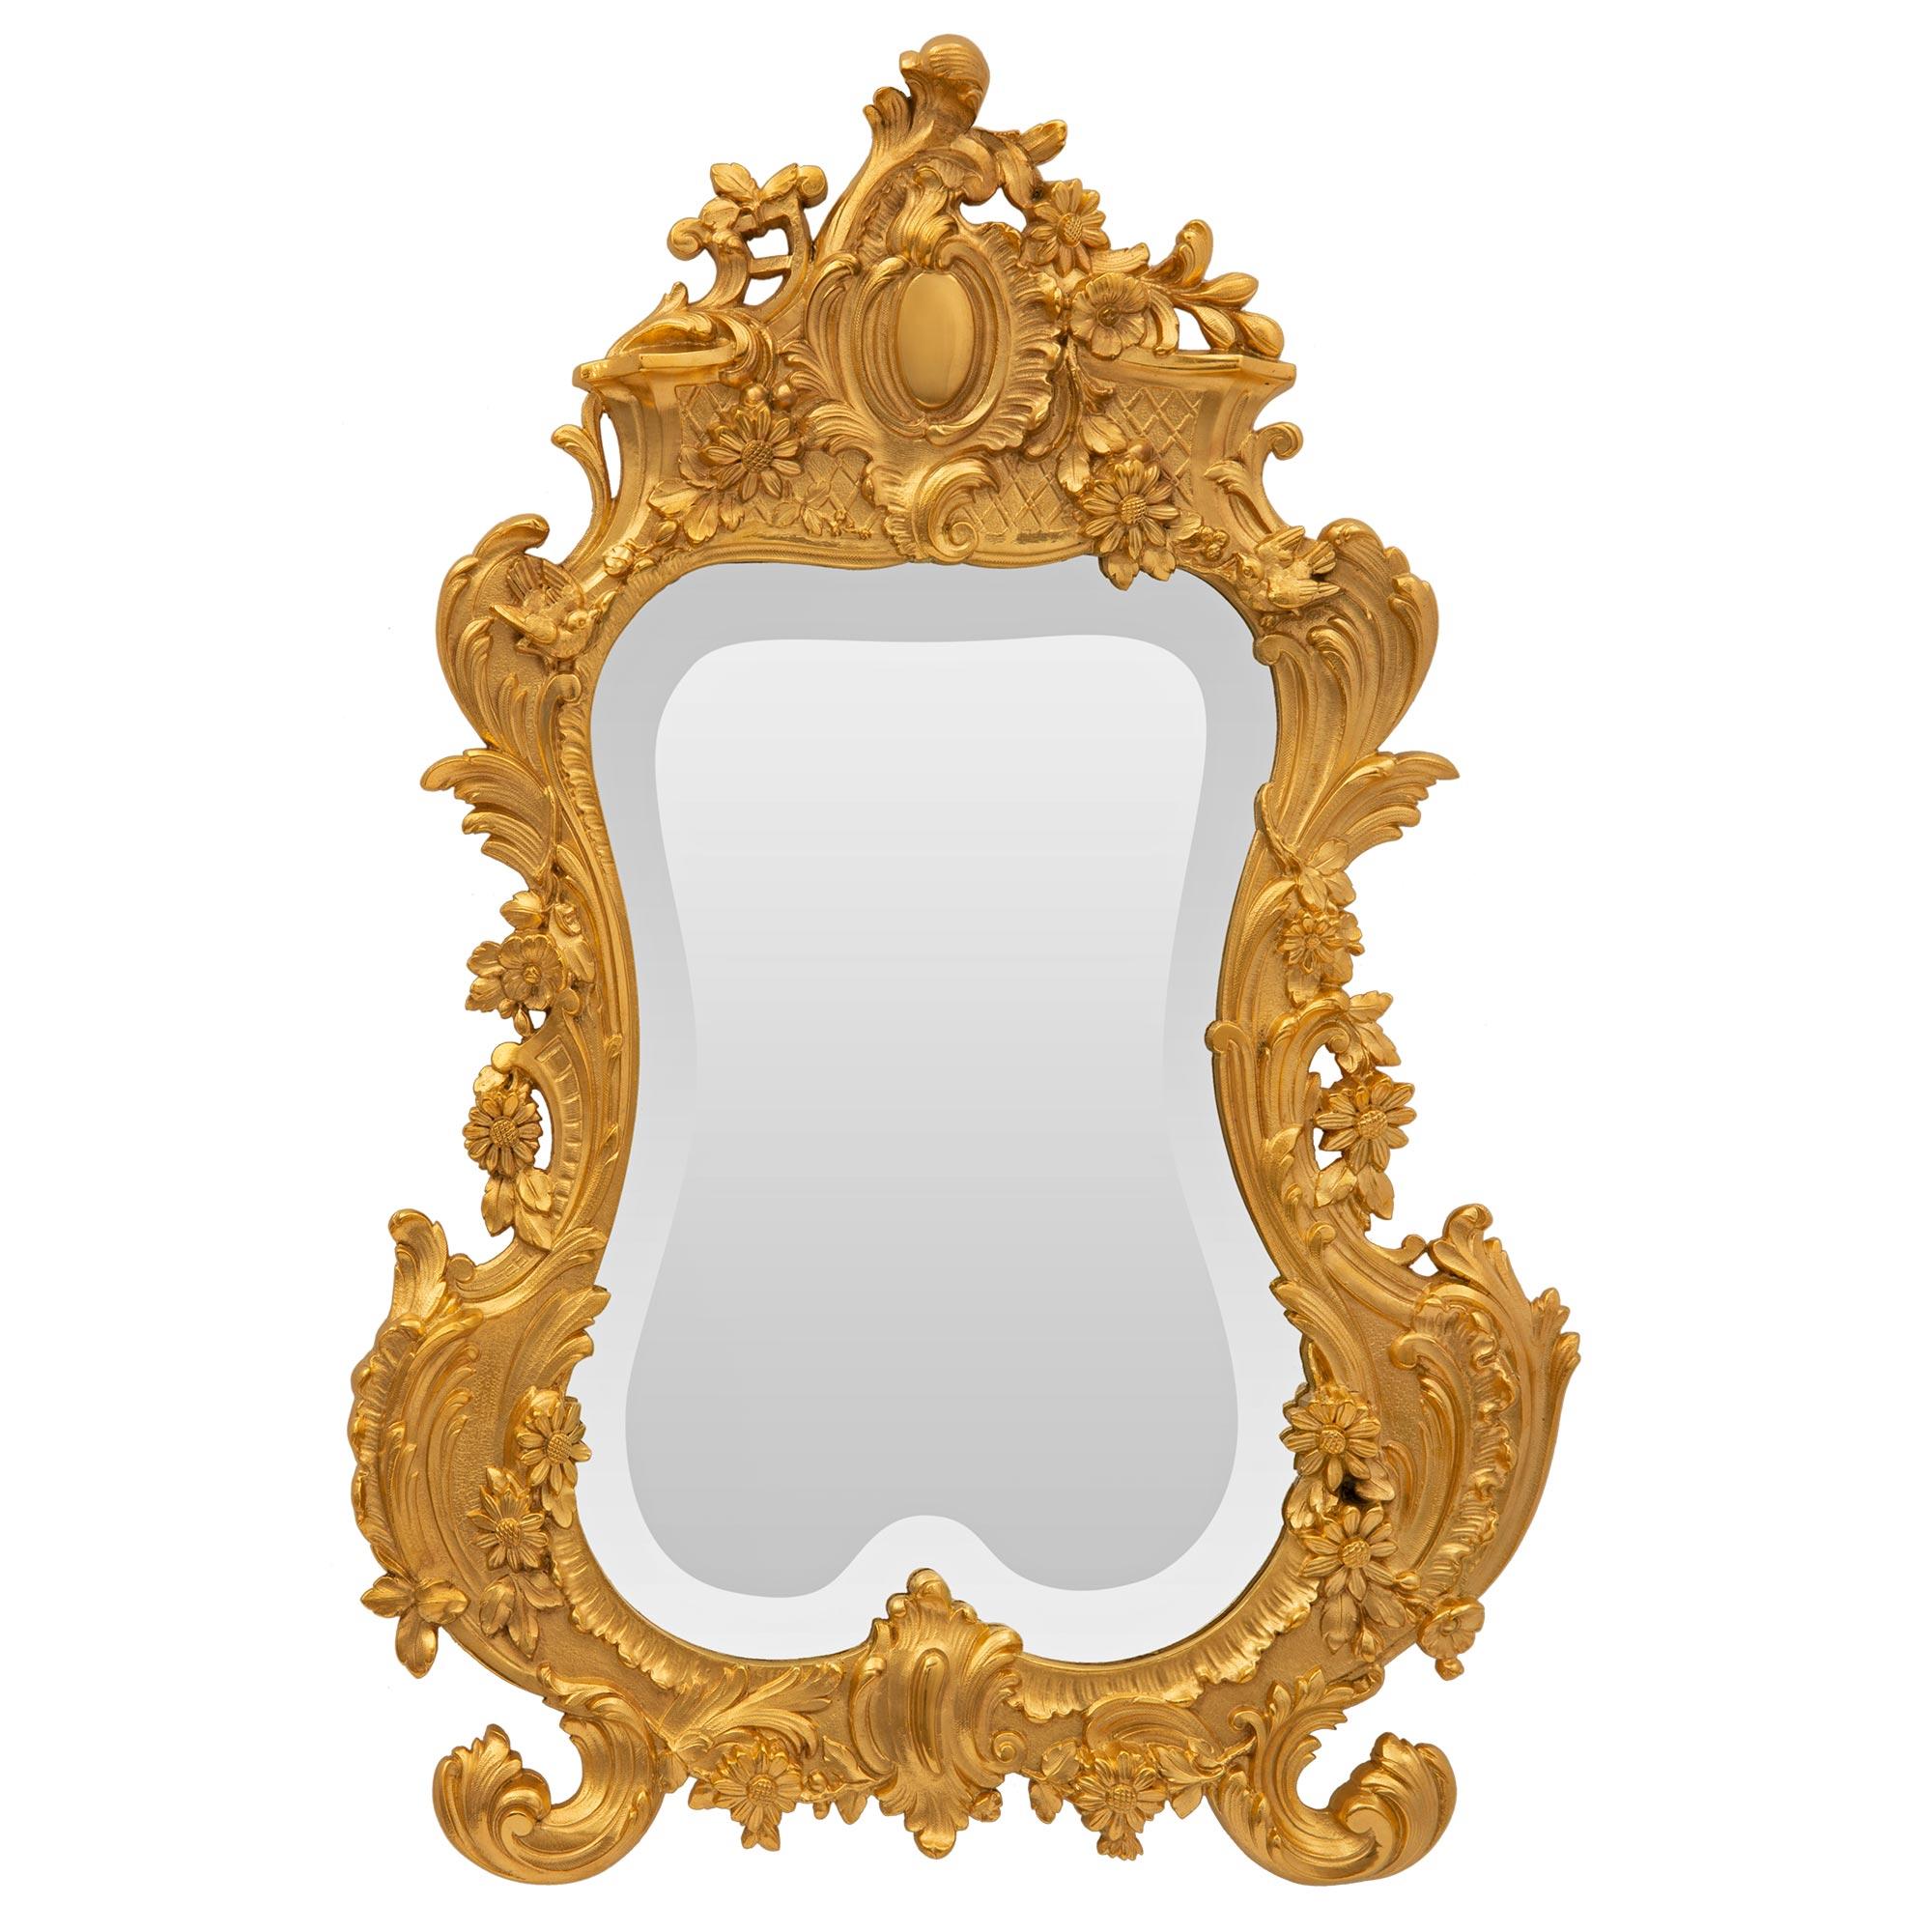 Un charmant miroir de courtoisie en bronze doré Louis XV du 19ème siècle. Ce miroir mural de petite taille a conservé sa belle plaque de miroir biseautée d'origine dans son cadre en bronze doré. Le cadre présente une forme feuillagée très décorative